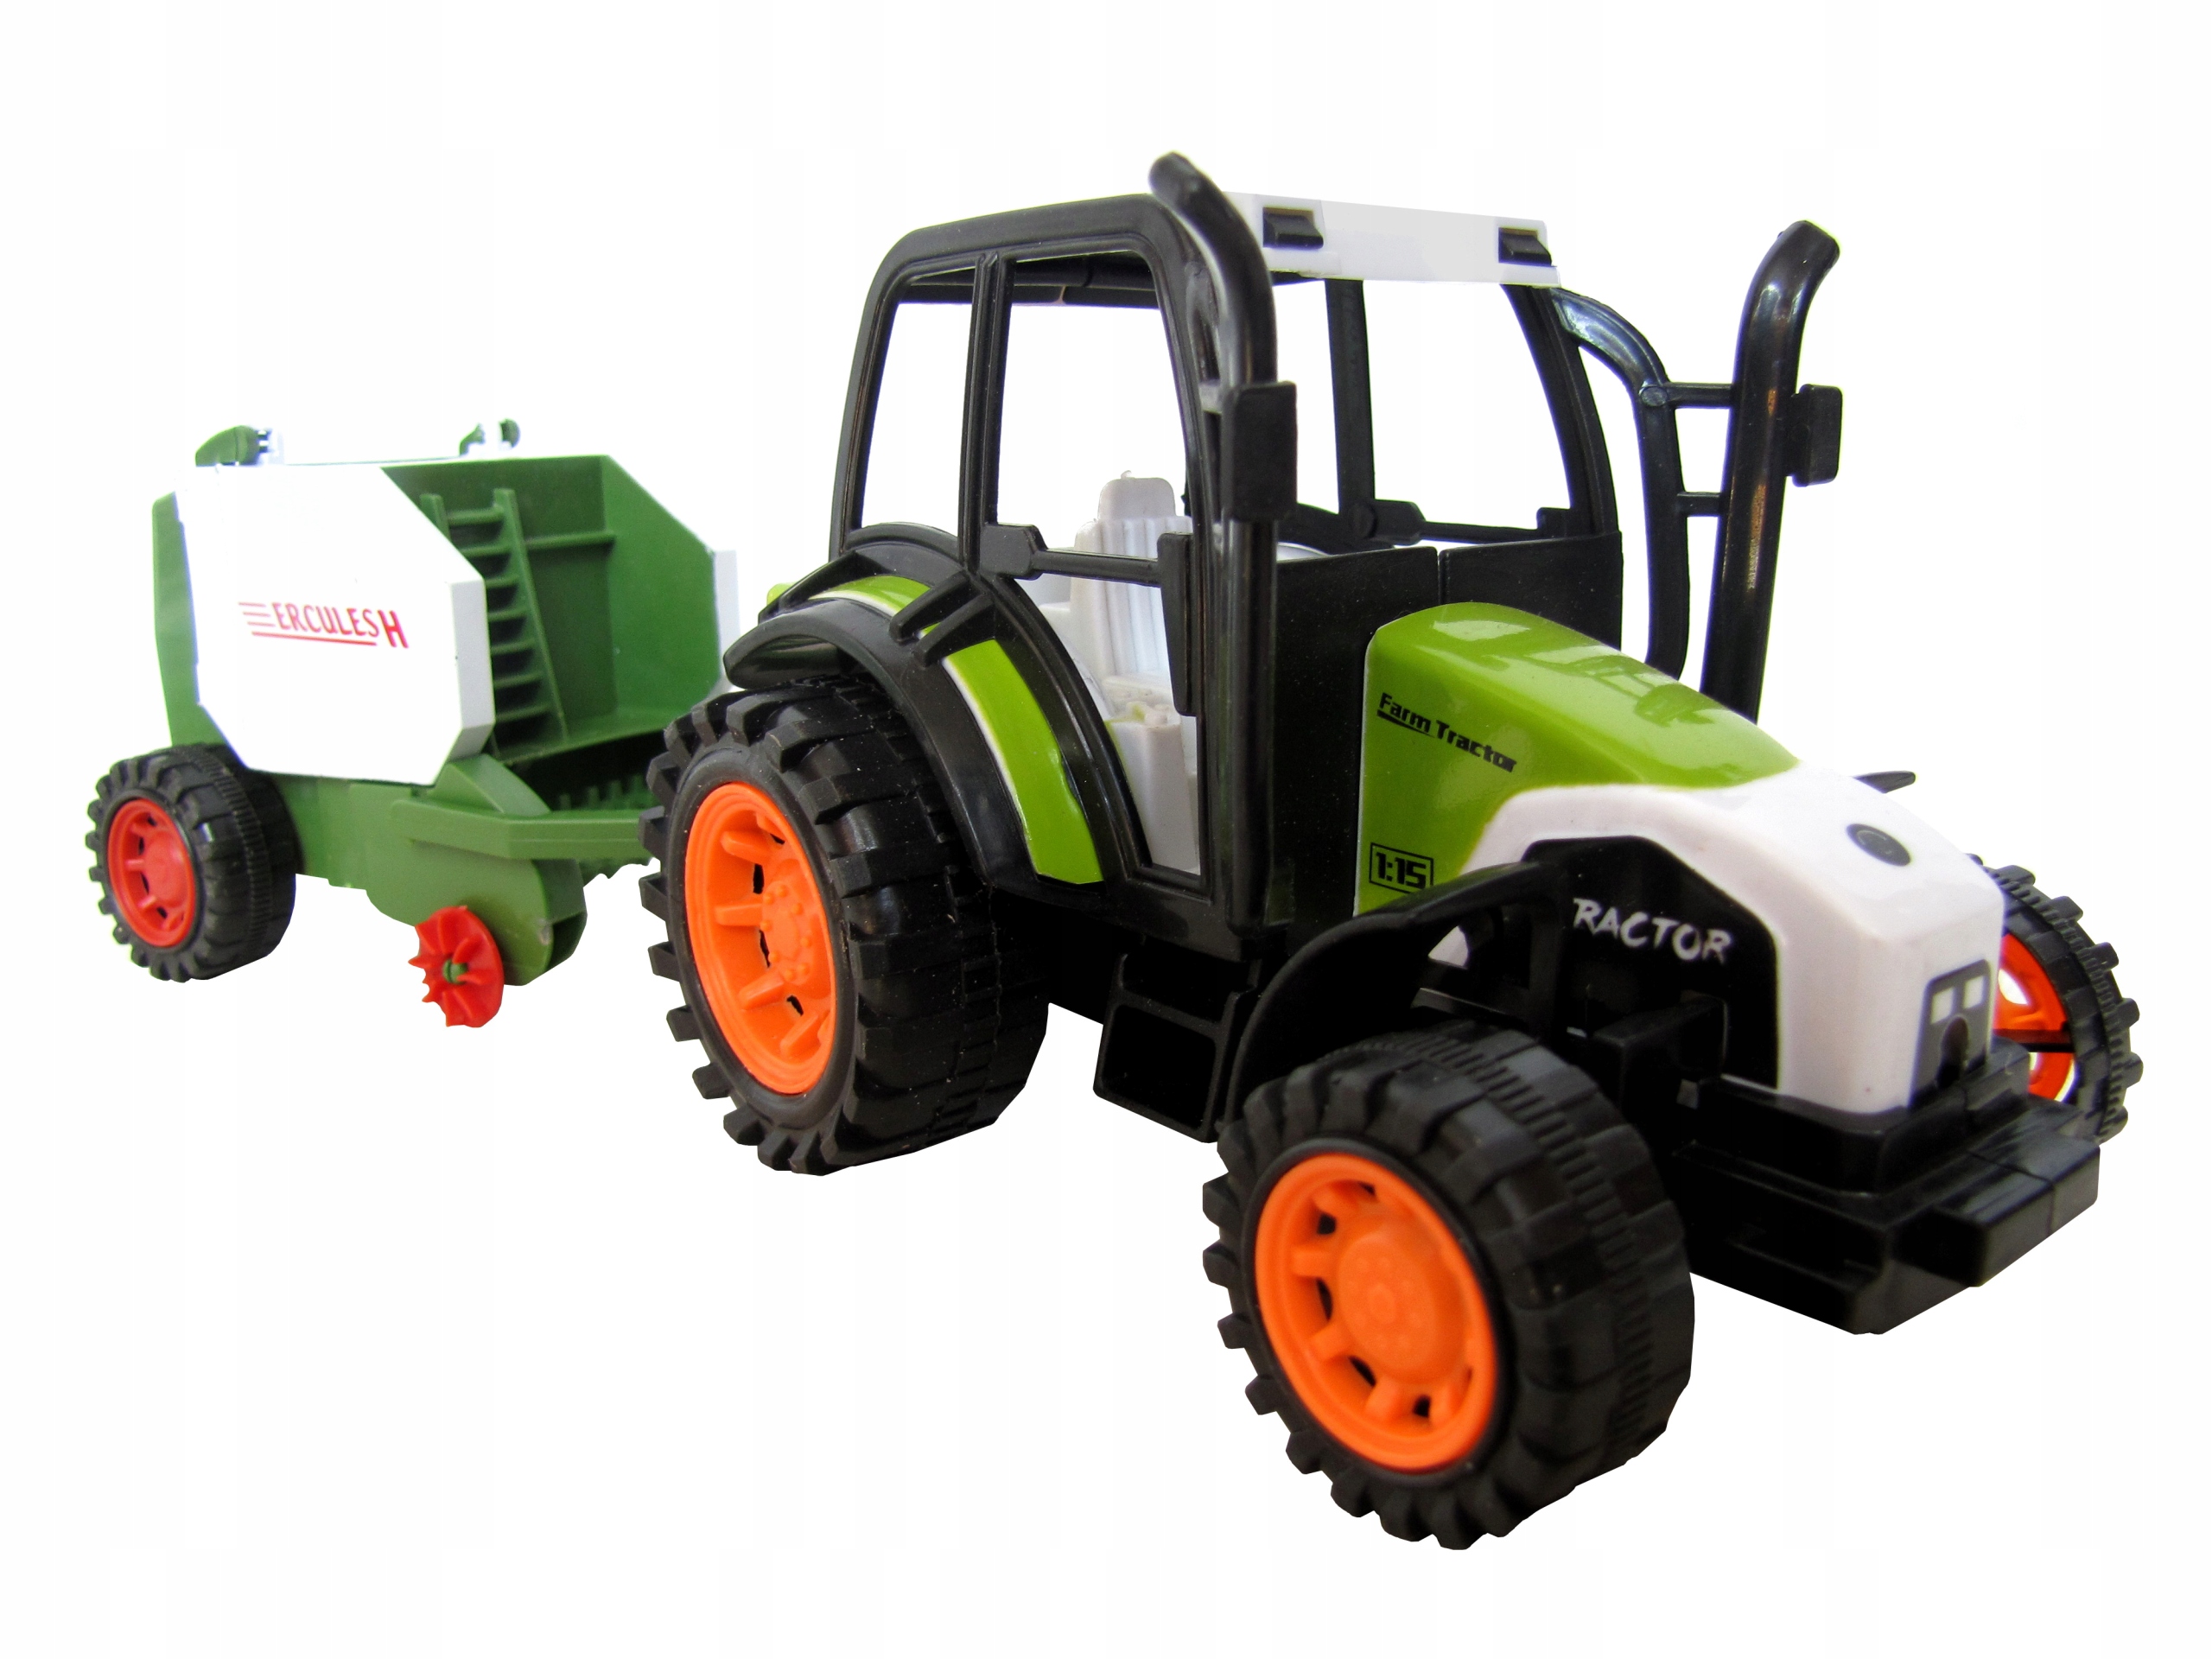 Traktor Z Maszyna Rolnicza Ciagnik Przyczepa Farma 7546027708 Allegro Pl